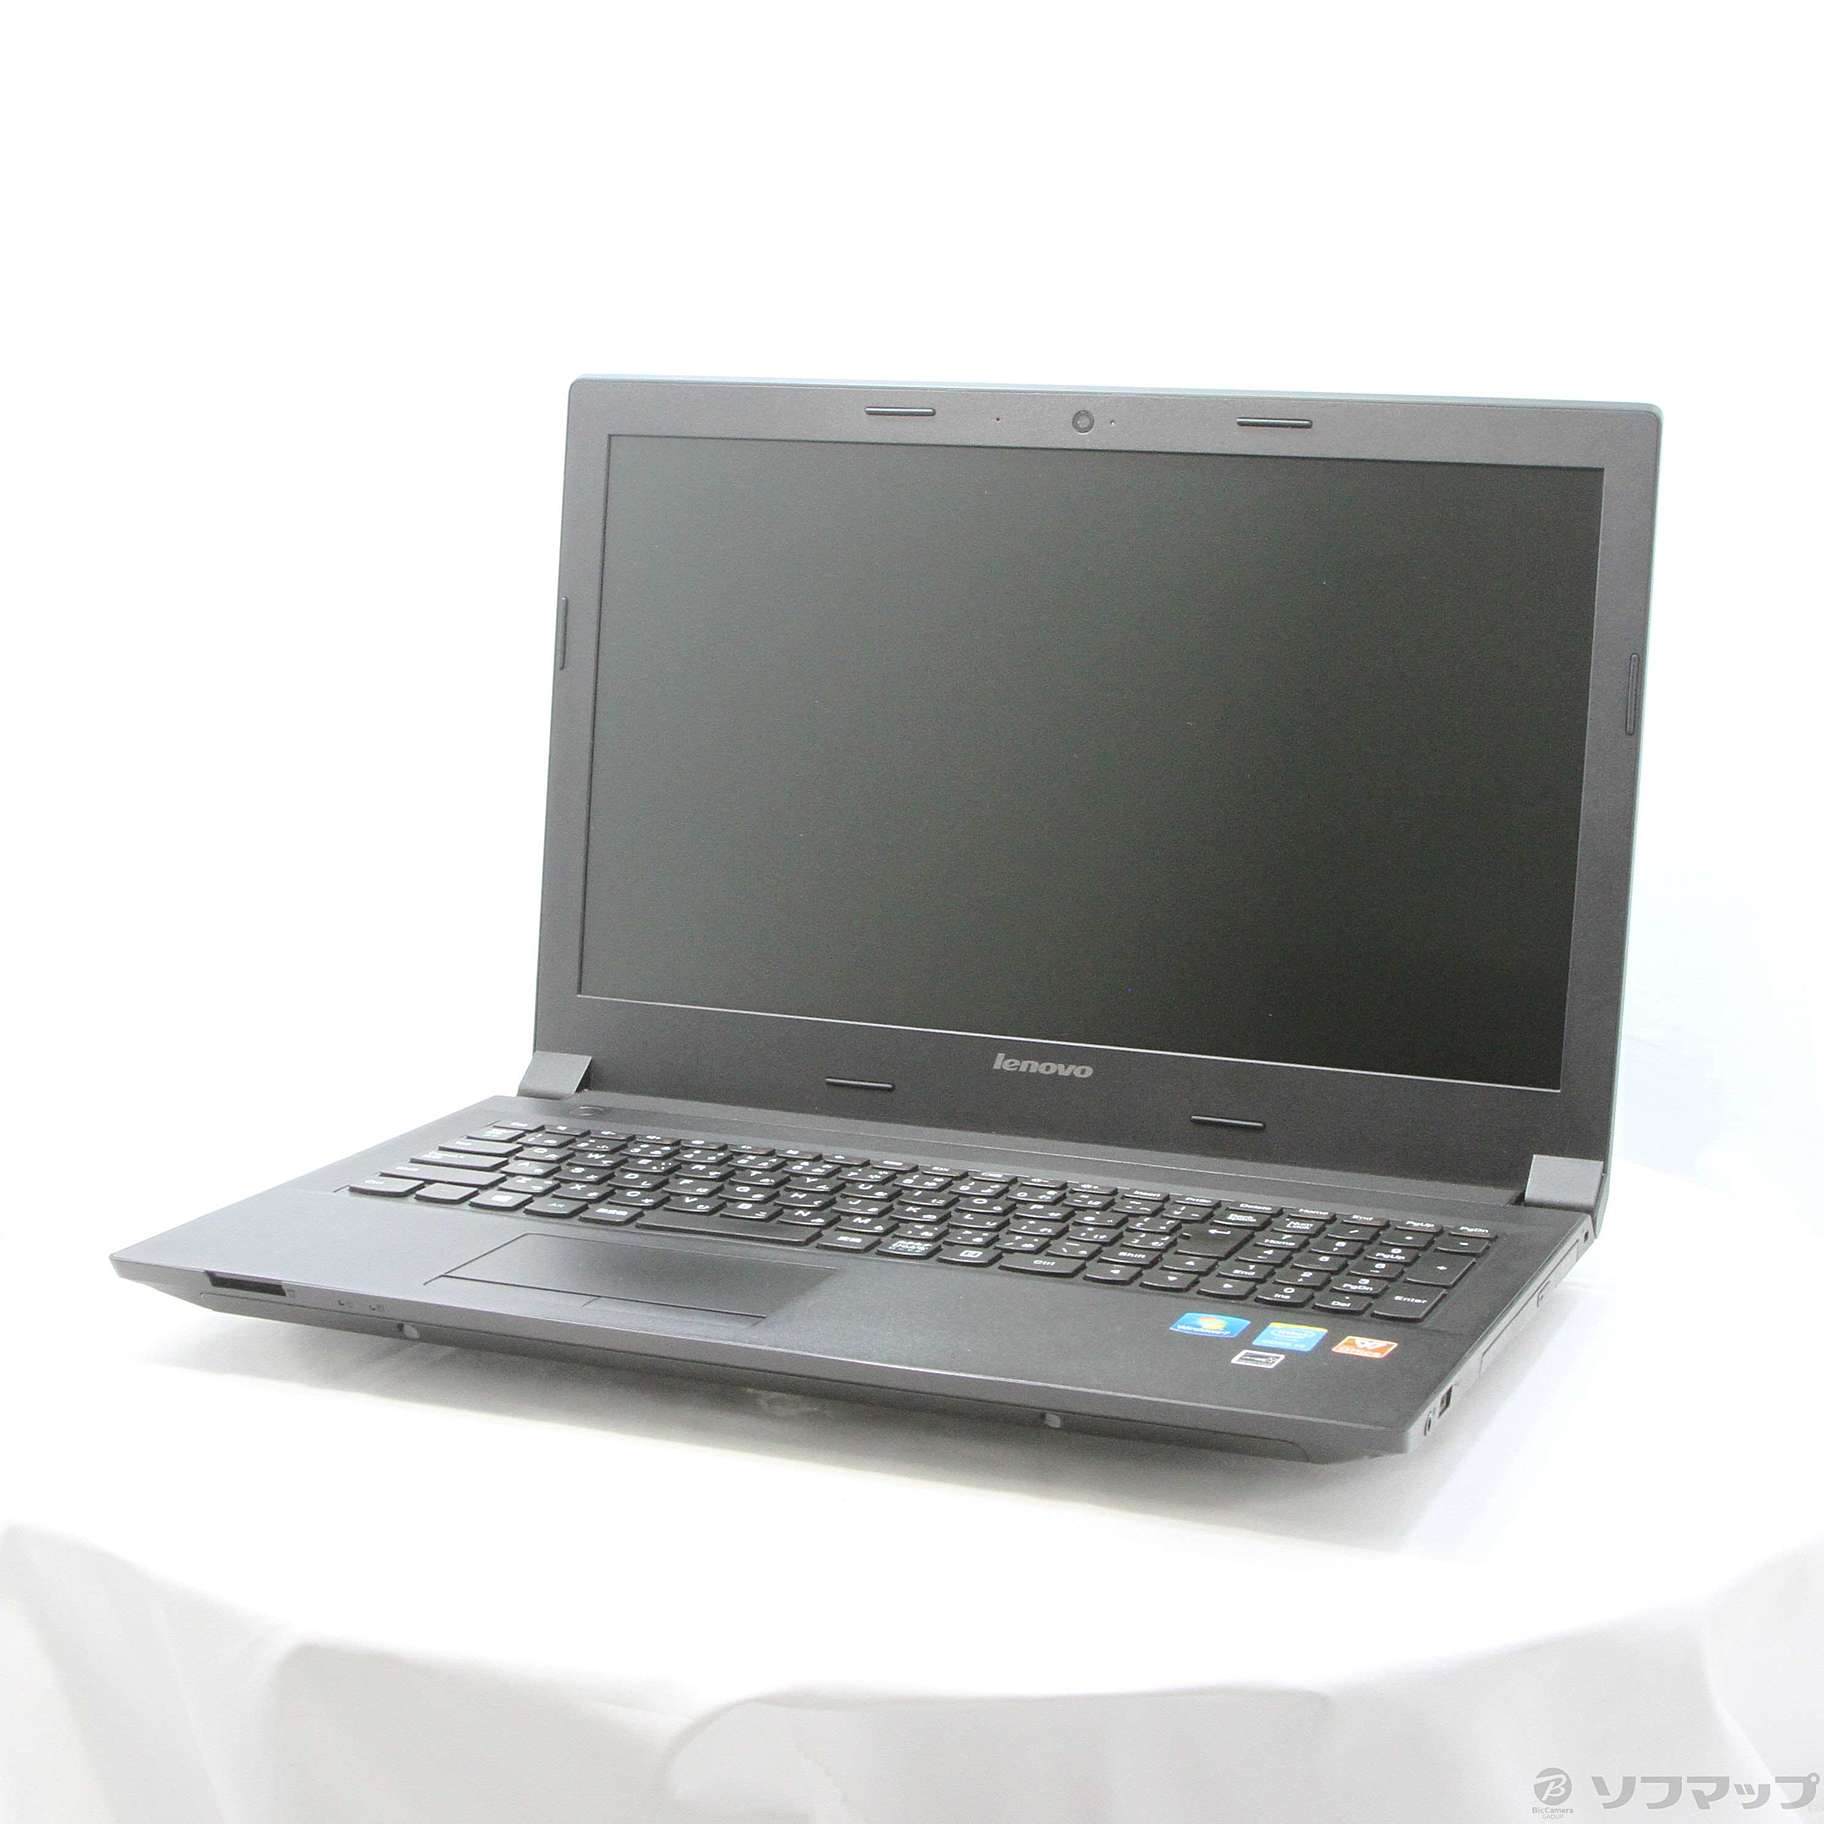 格安安心パソコン Lenovo B50 59426337 ブラック